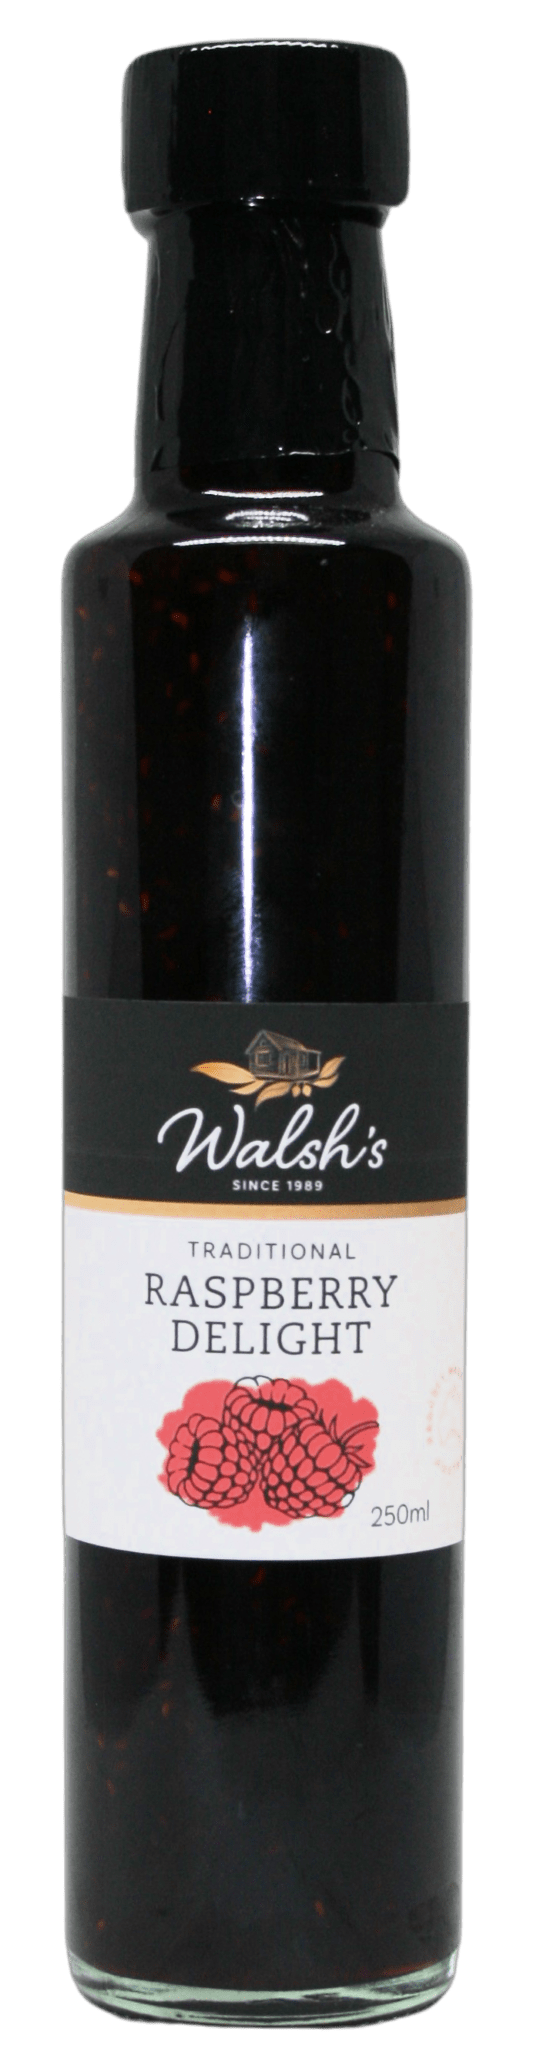 Walshs Raspberry Delight